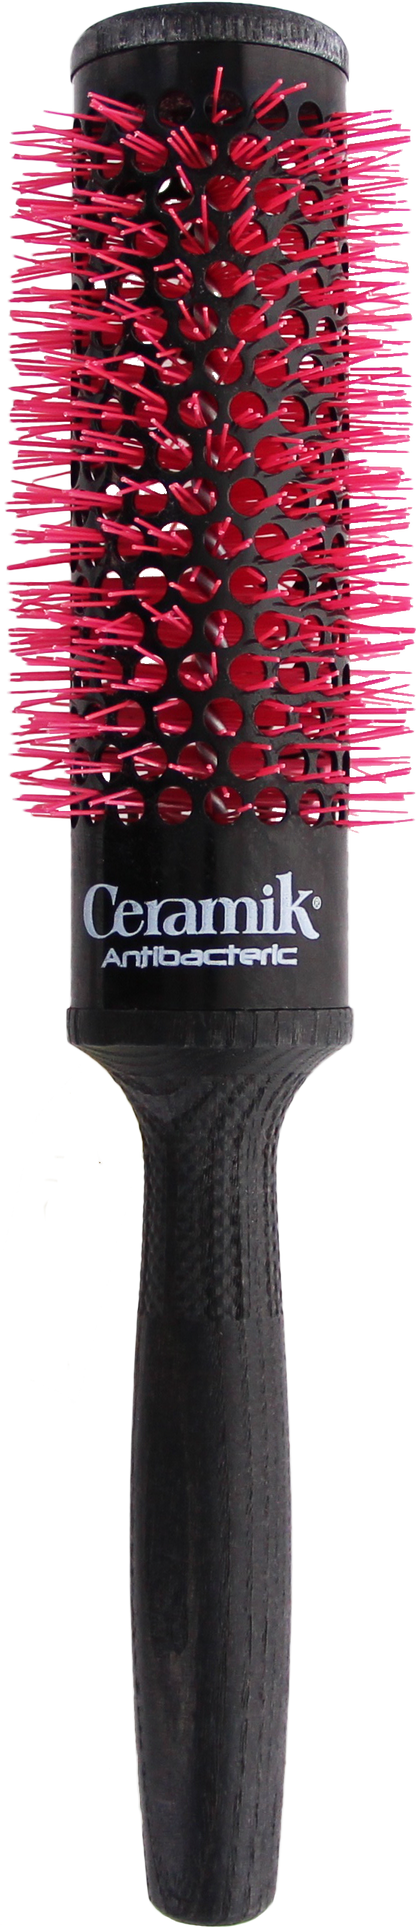 Tek Ceramik Antibateric Oxy Round Brush 36mm